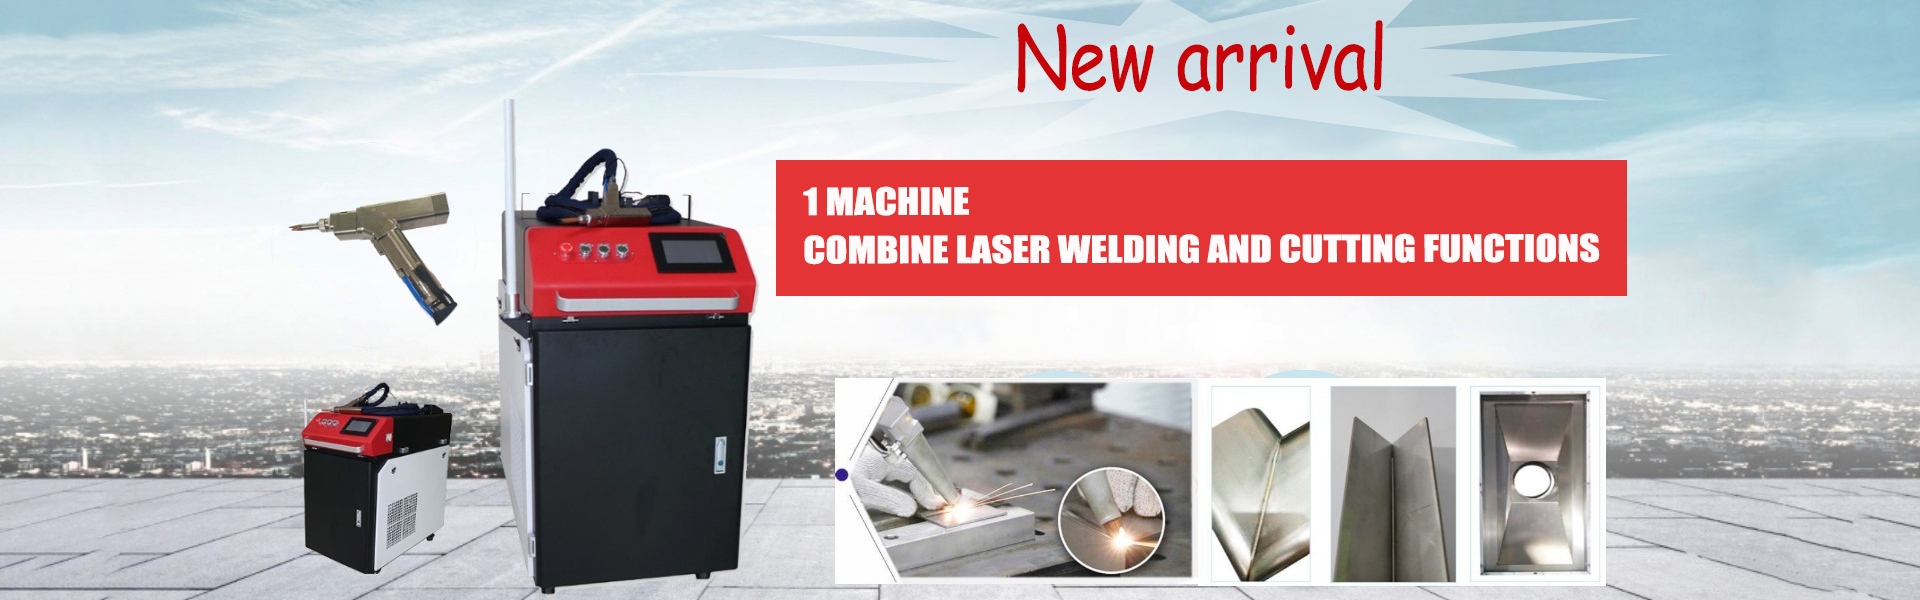 macchina per saldatura laser, macchina per marcatura laser, saldatore laser,Hunan Youmir Laser Technology Co., Ltd.